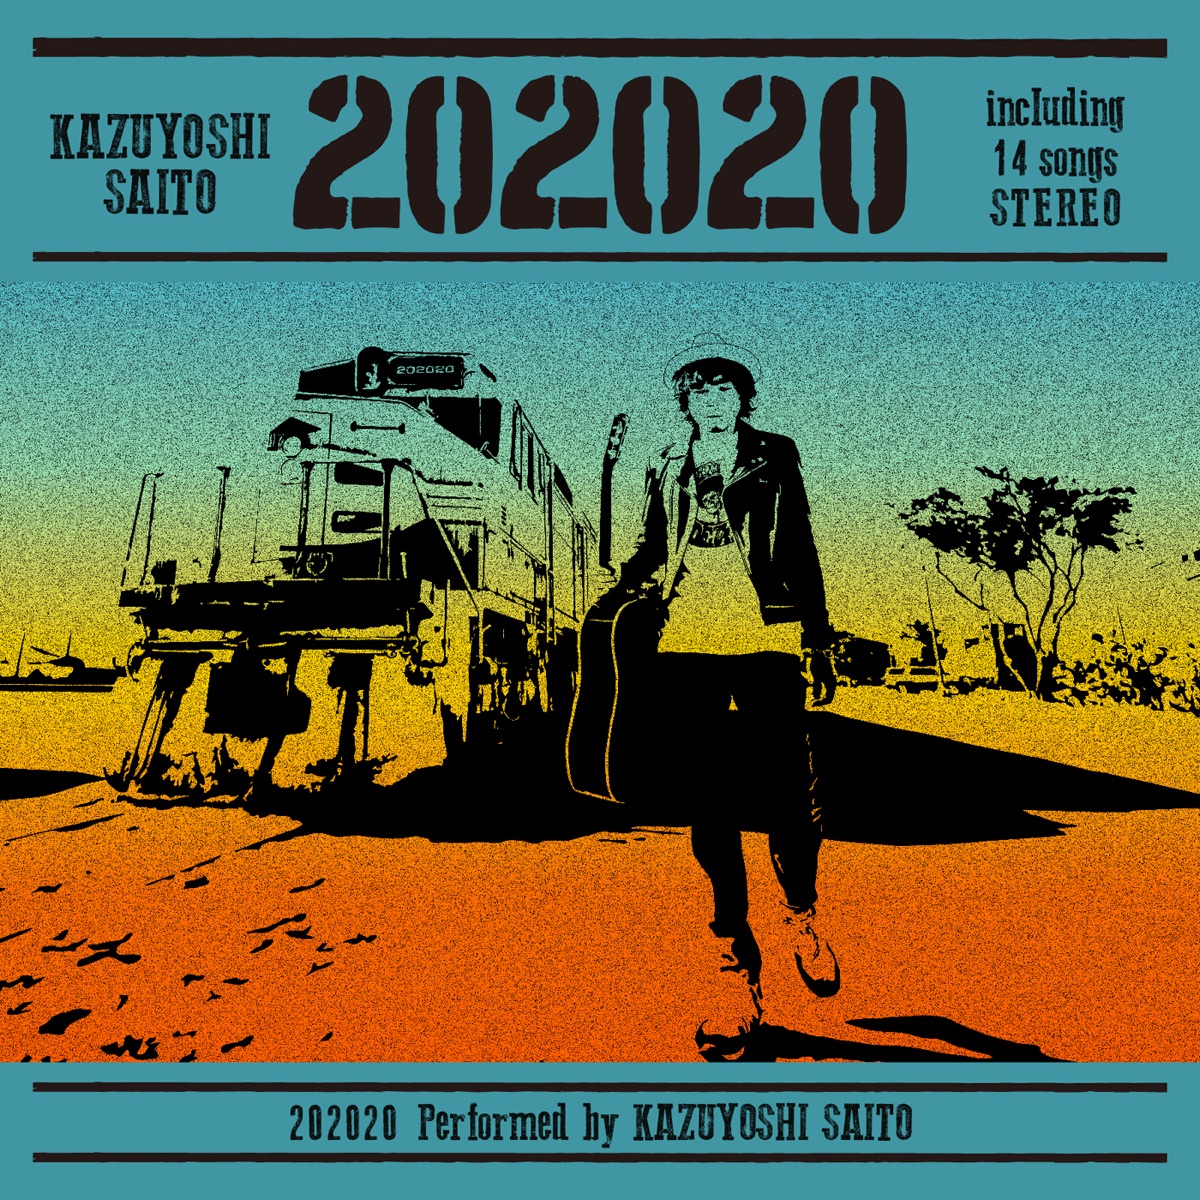 『斉藤和義 - シャーク』収録の『202020』ジャケット